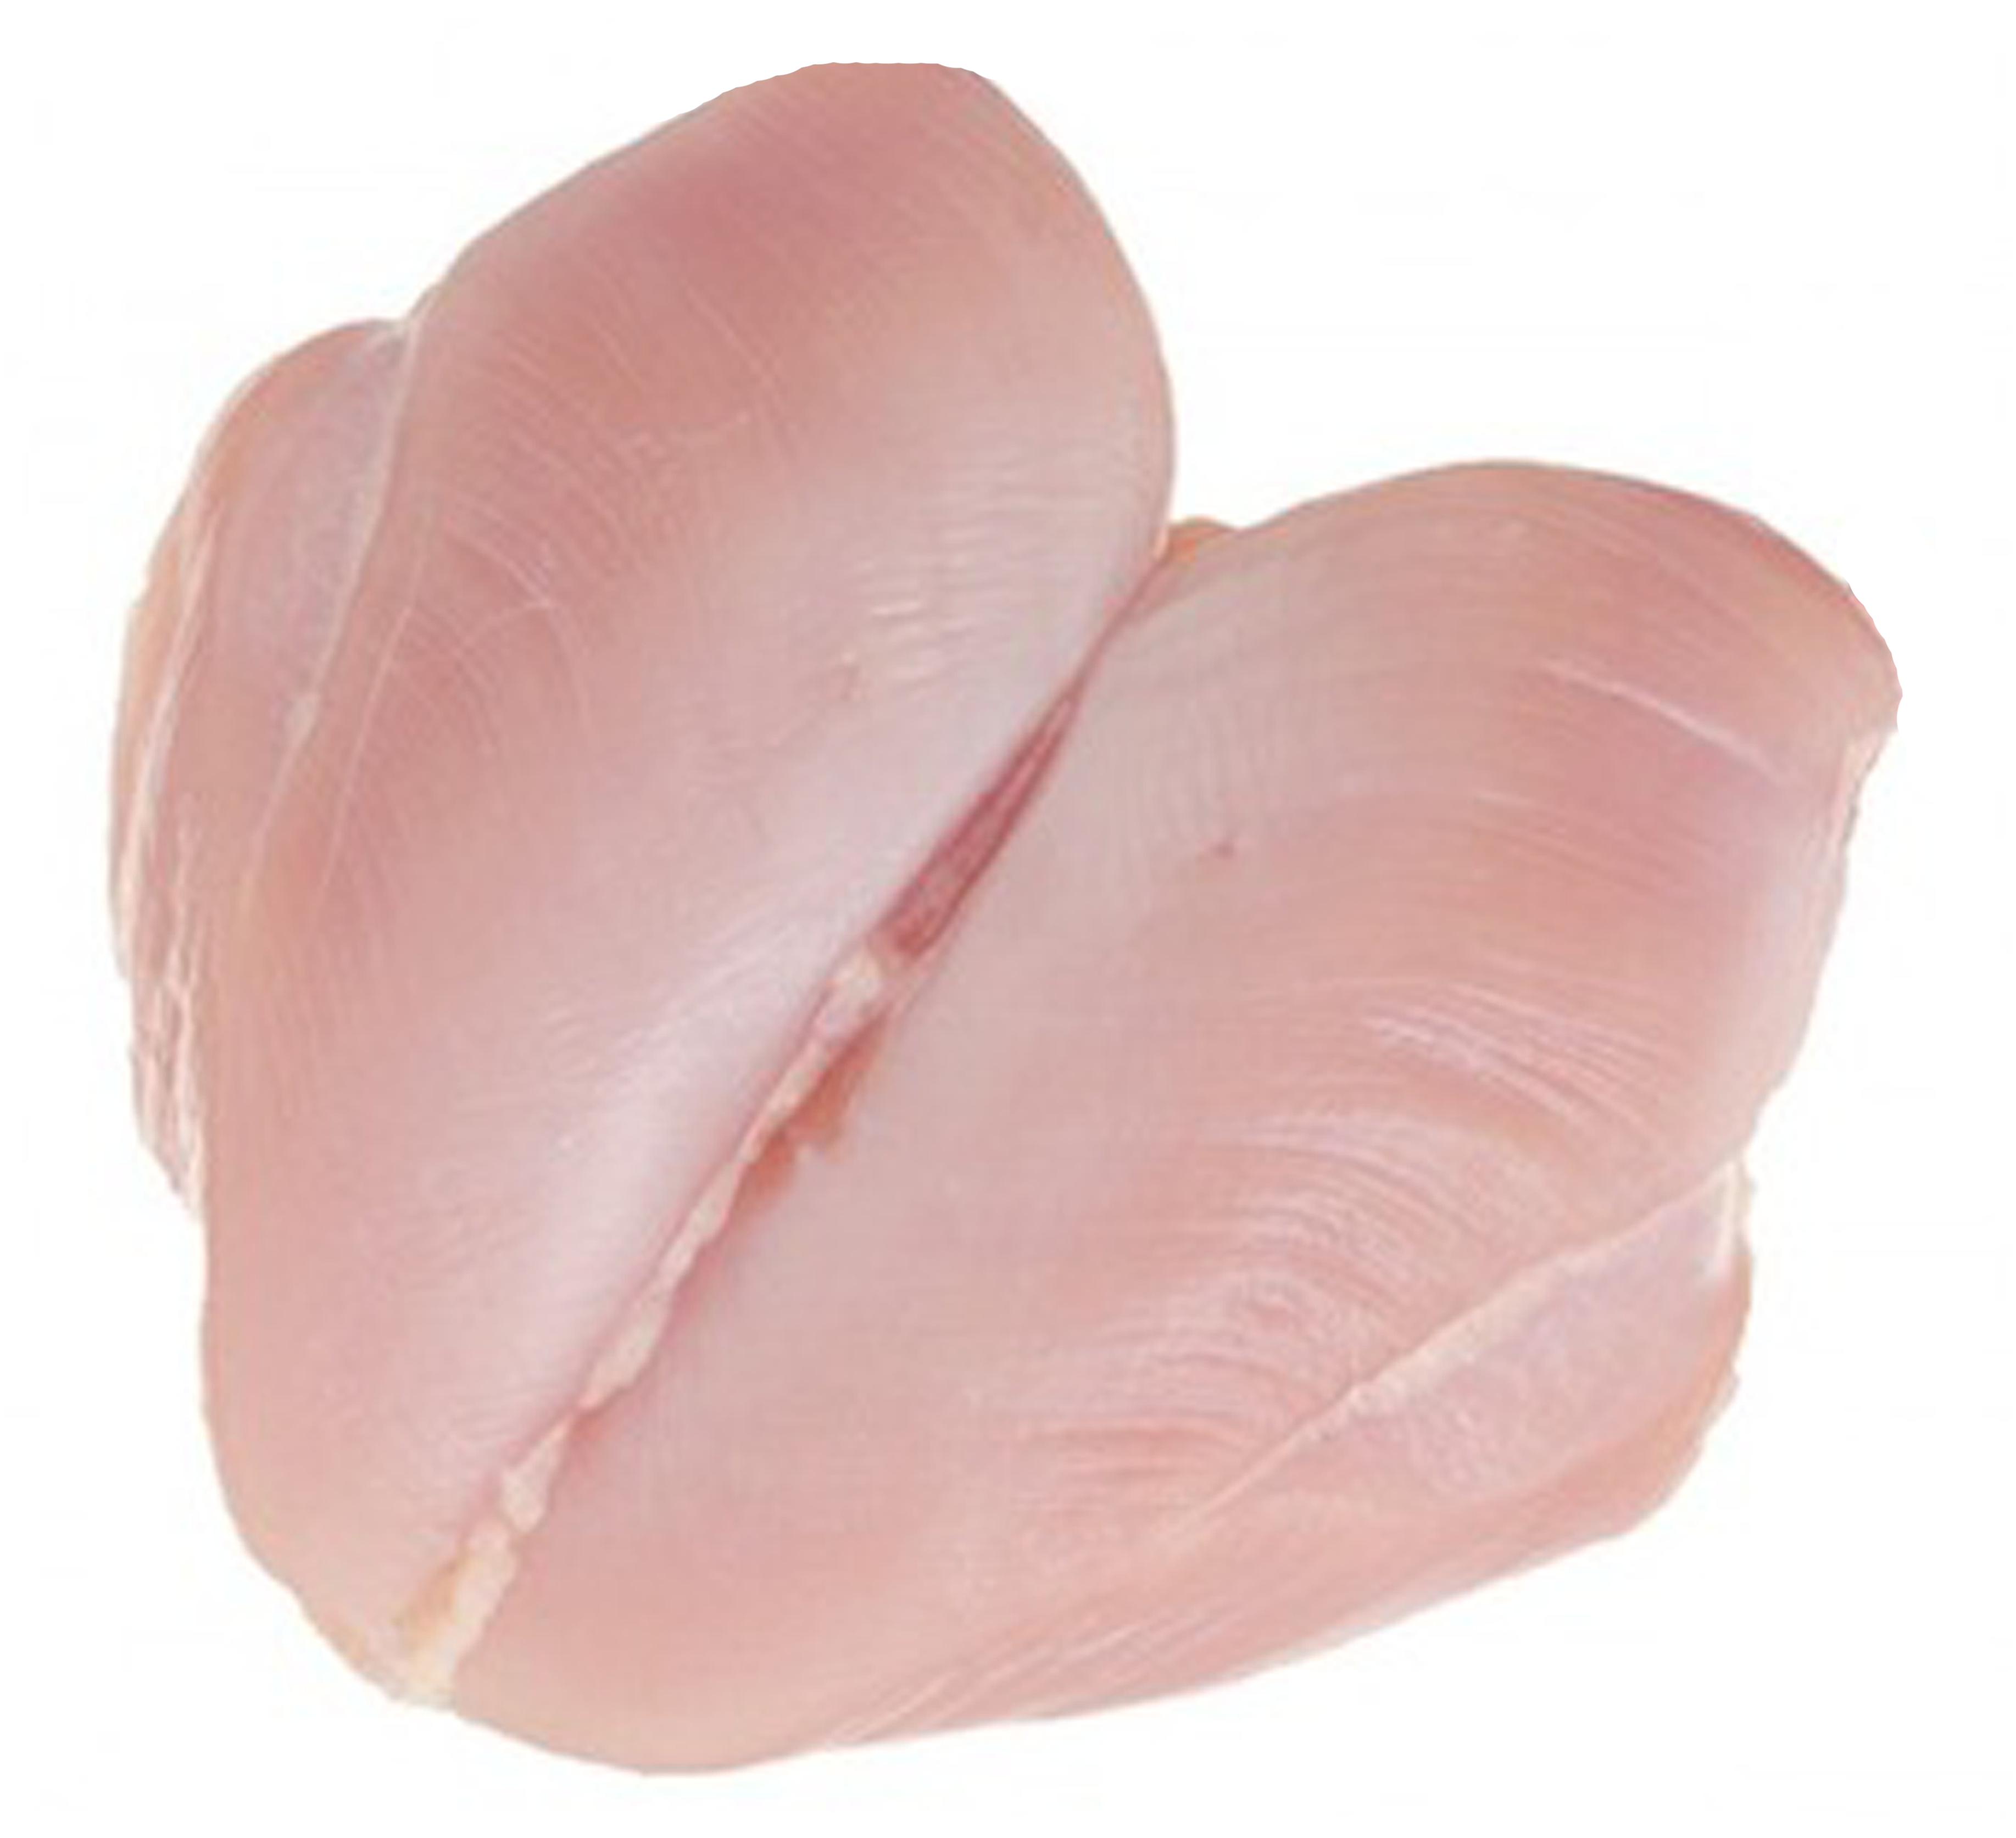 Boneless Skinless Chicken Breast On Sale Near Me